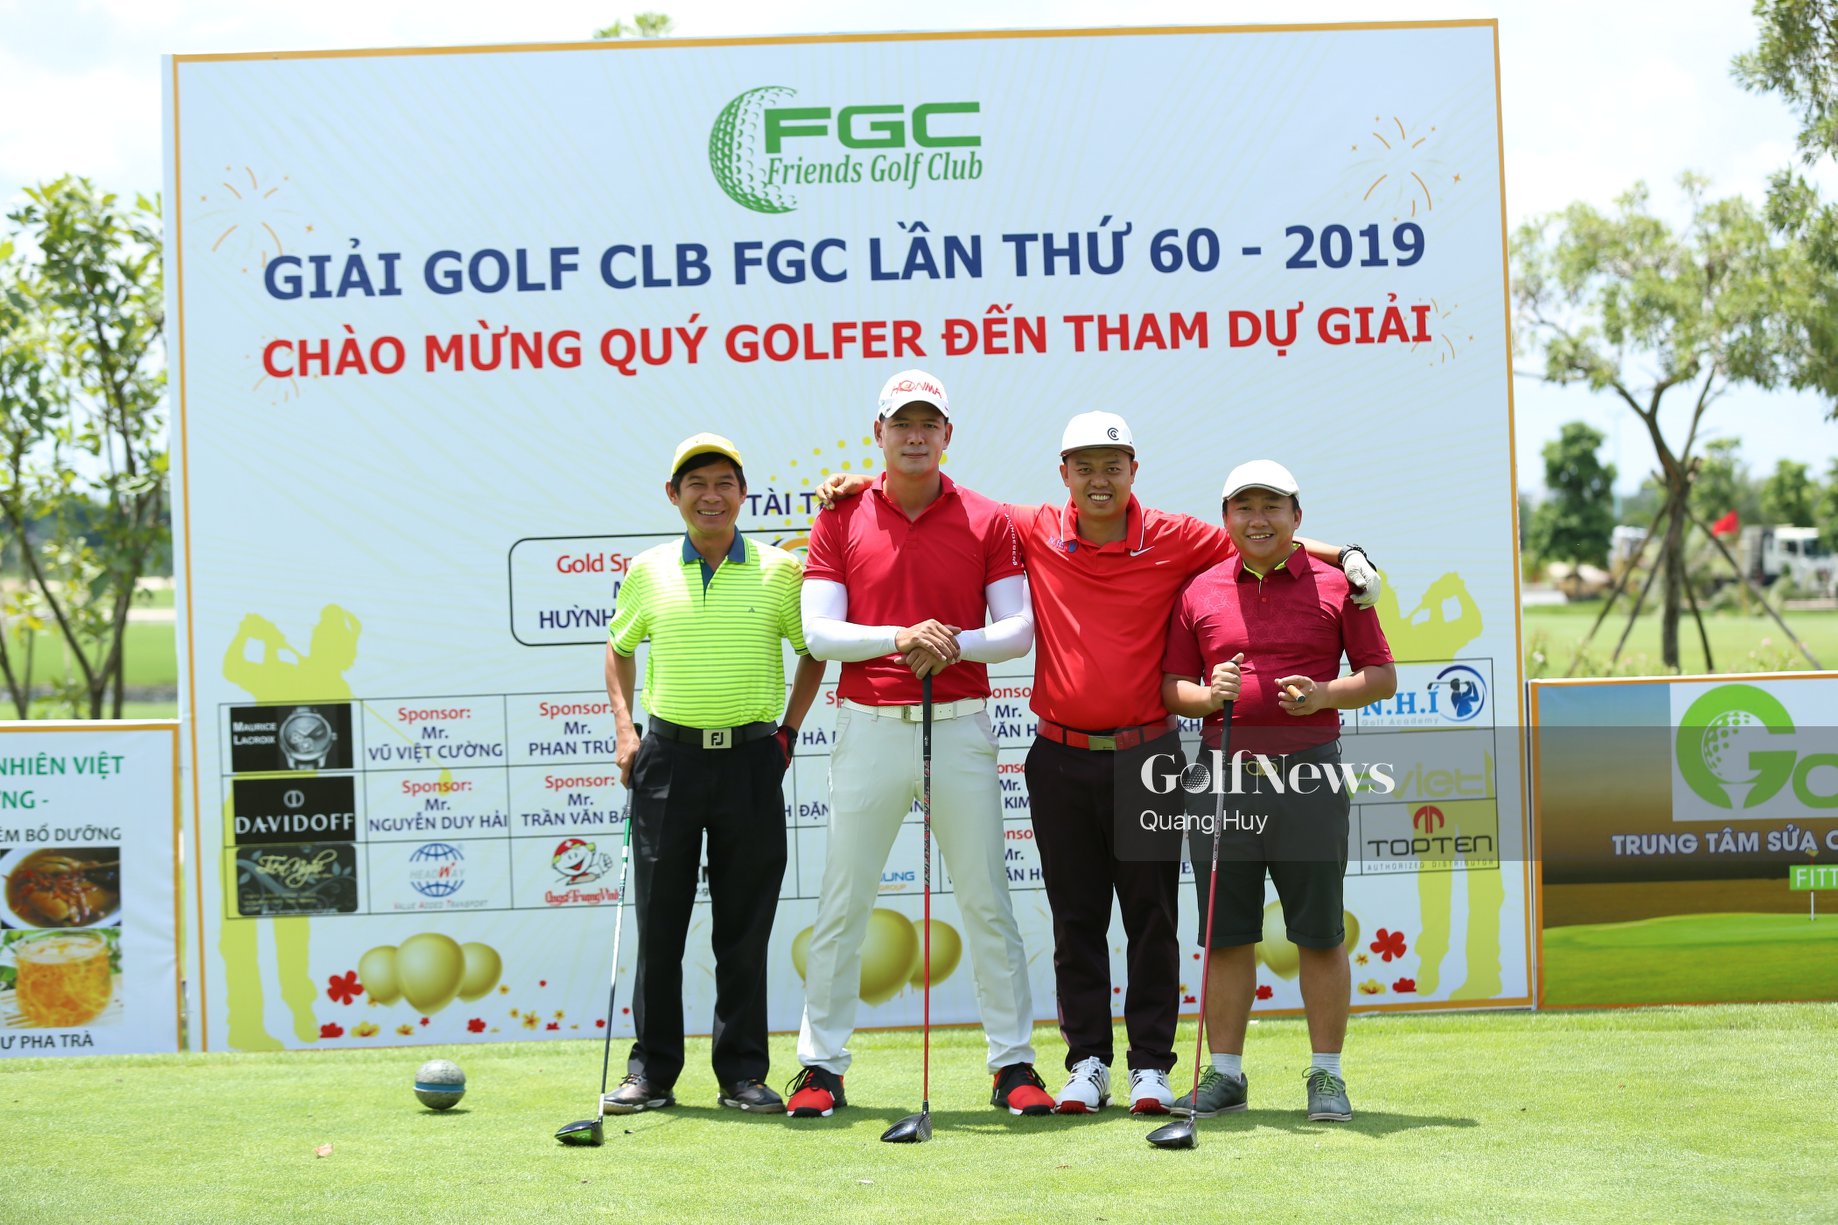 CLB FGC tổ chức Giải golf Thường niên lần thứ 60 với sự góp mặt của 148 golfer tham gia